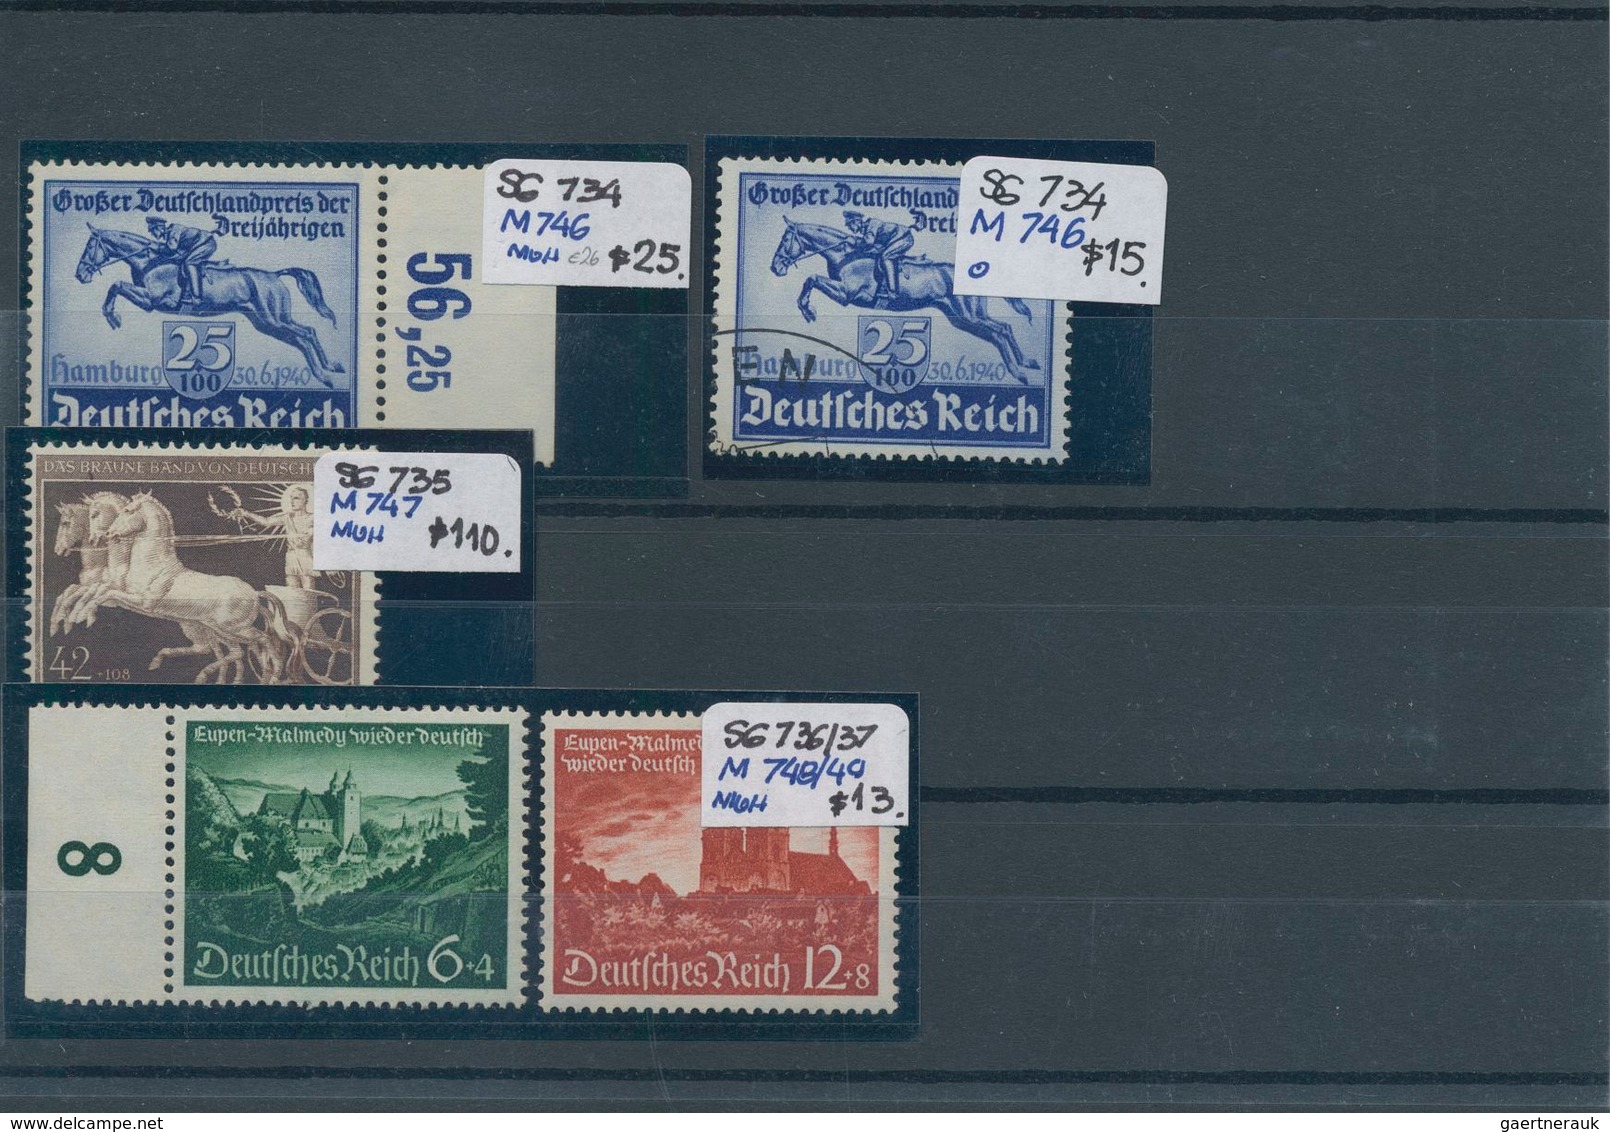 Deutschland: 1916/1955 (ca.), sauber sortierter Bestand auf Steckkarten im Ringalbum, dabei guter Te